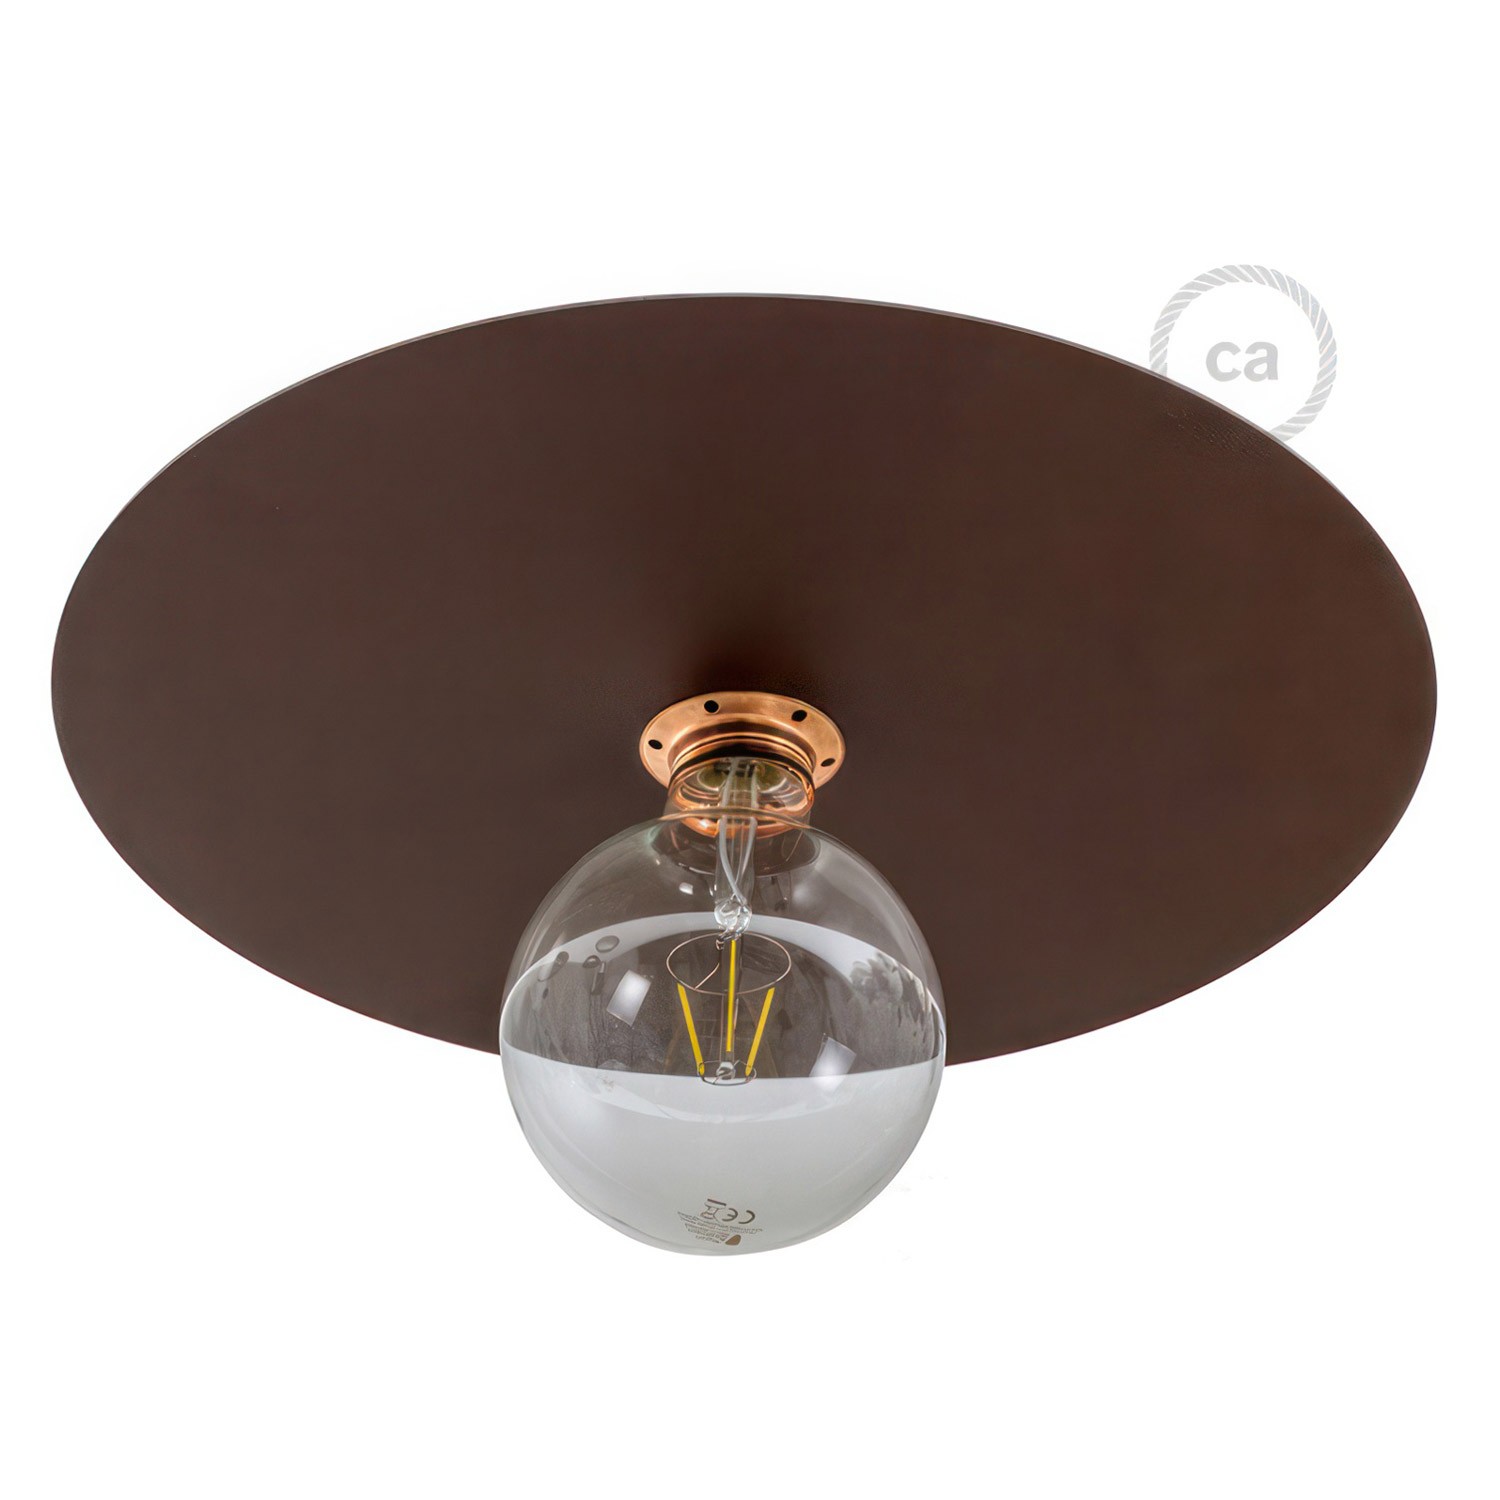 Lampenschirm Ellepi Oversize mit Eisenbeschichtung, 40 cm Durchmesser zum Aufhängen - Made in Italy